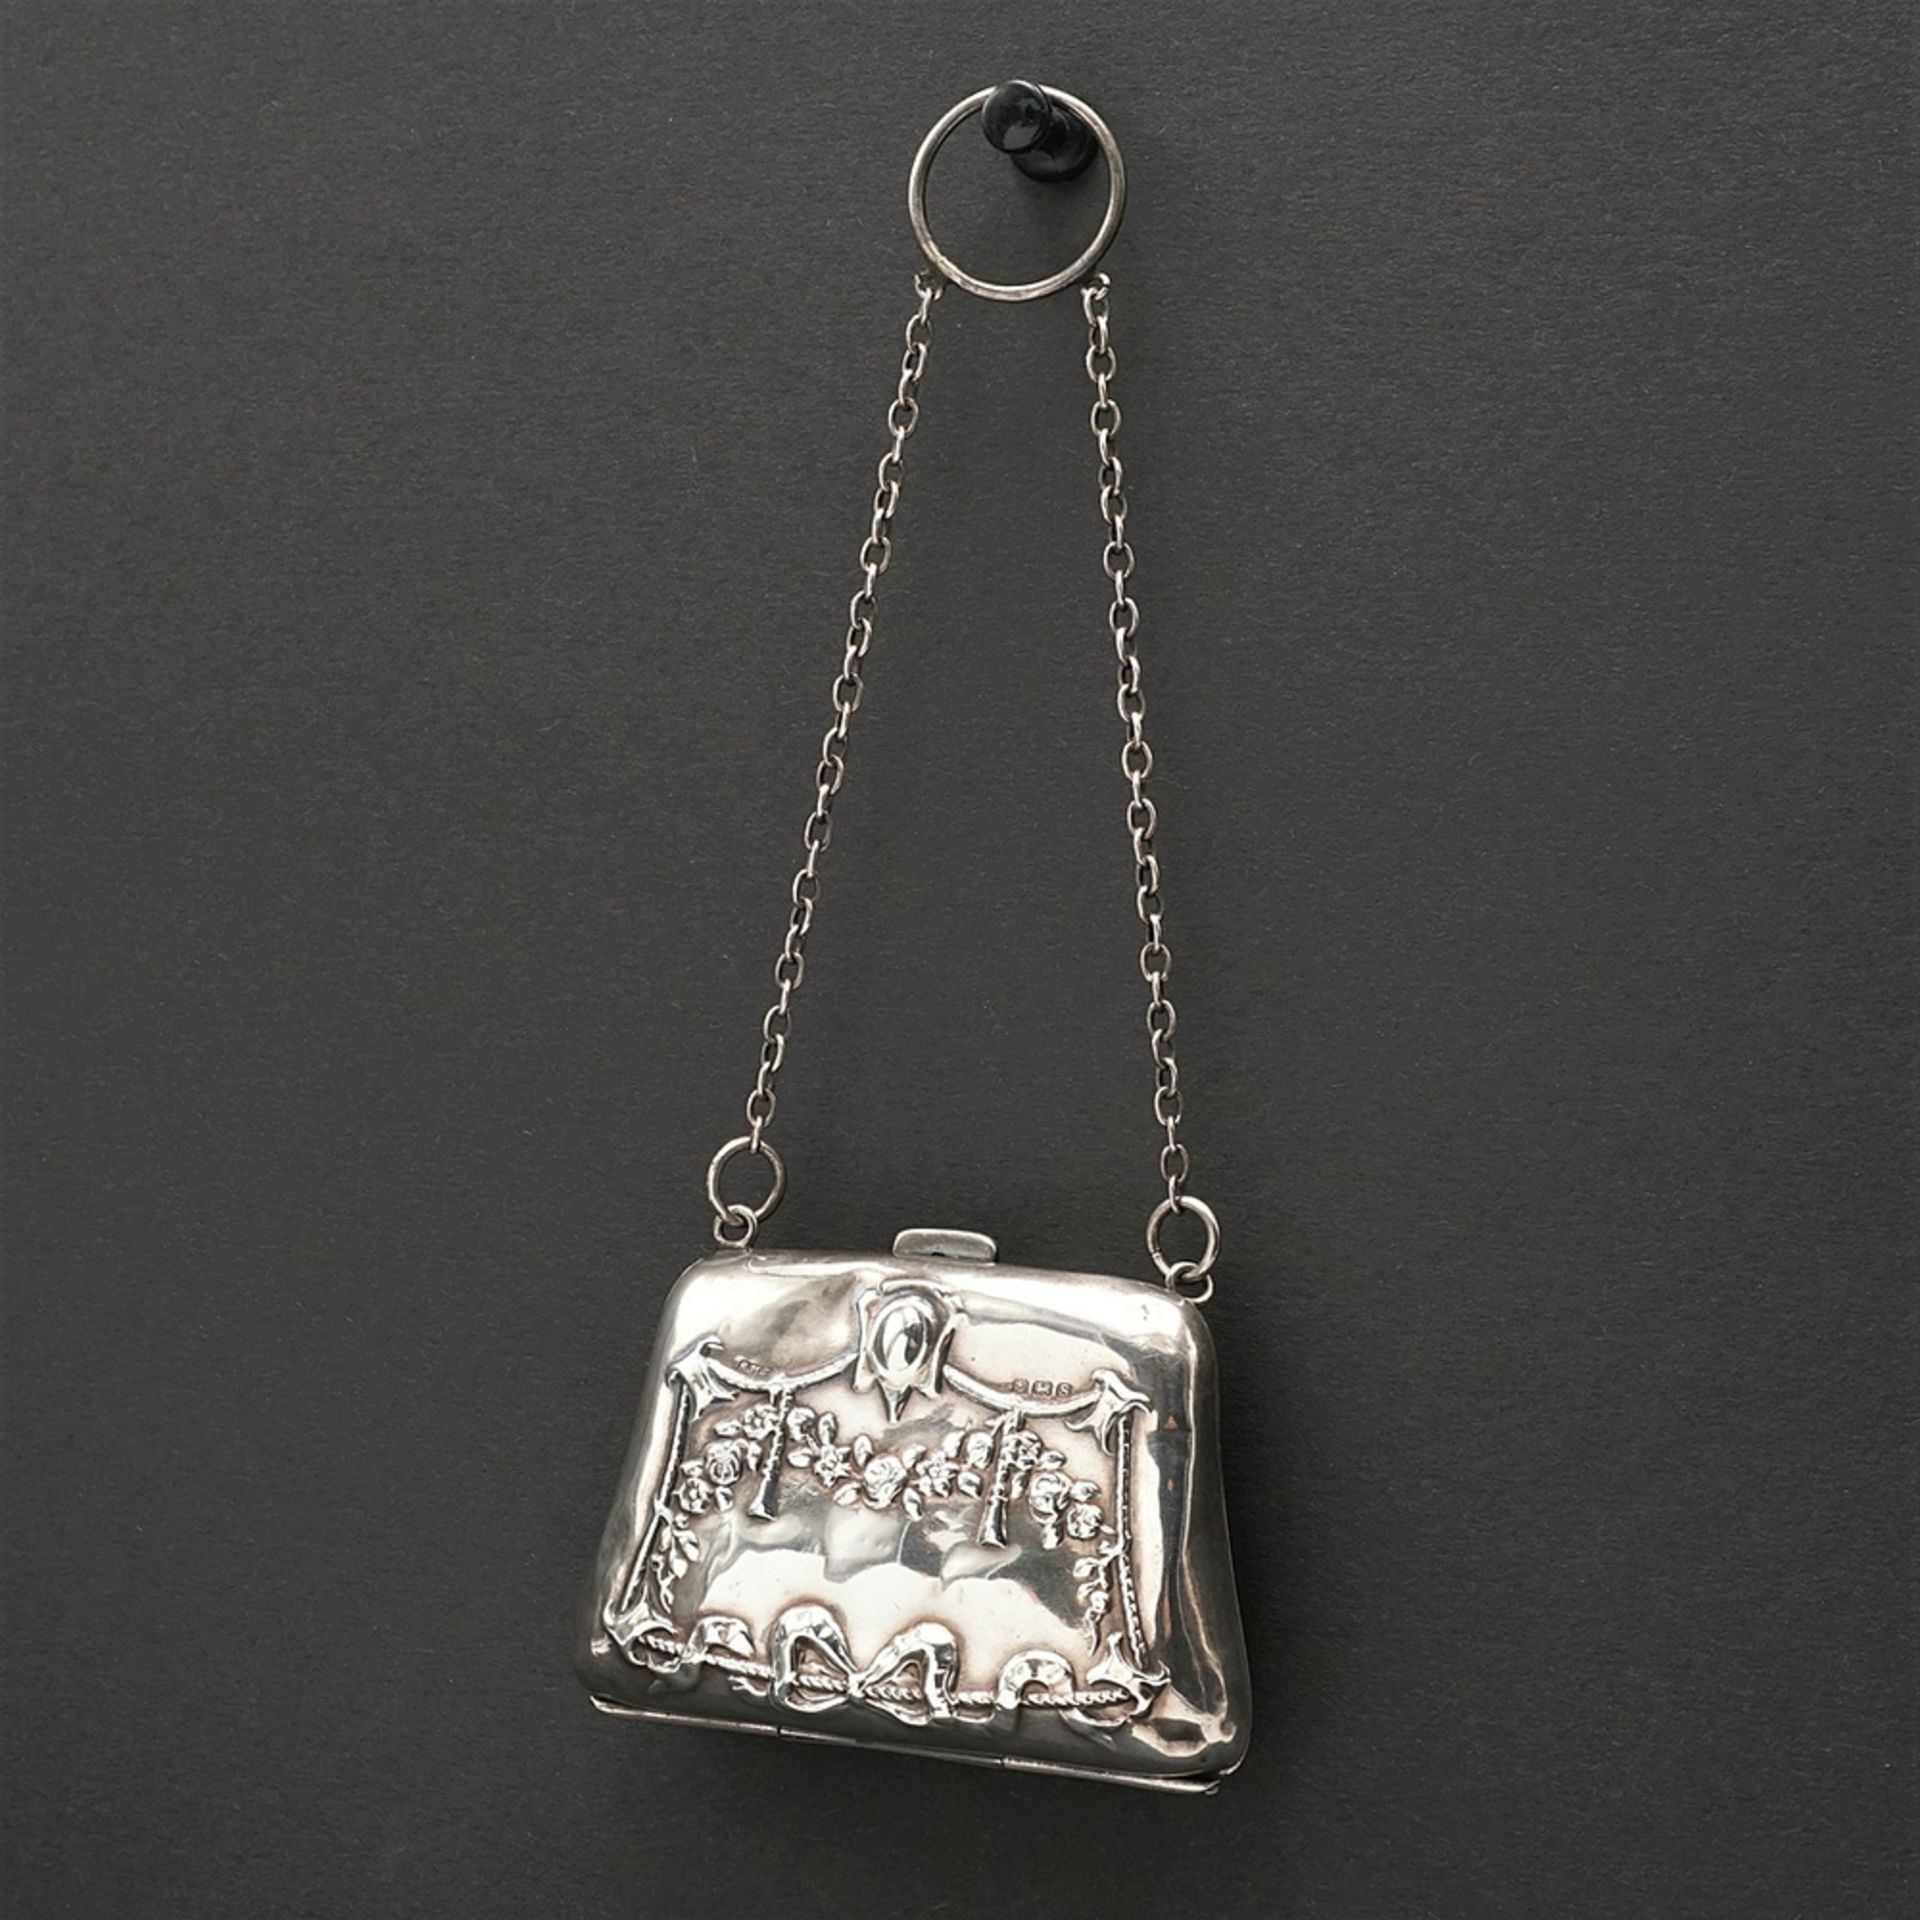 Silver wallet / bag, Art Nouveau - Image 2 of 6